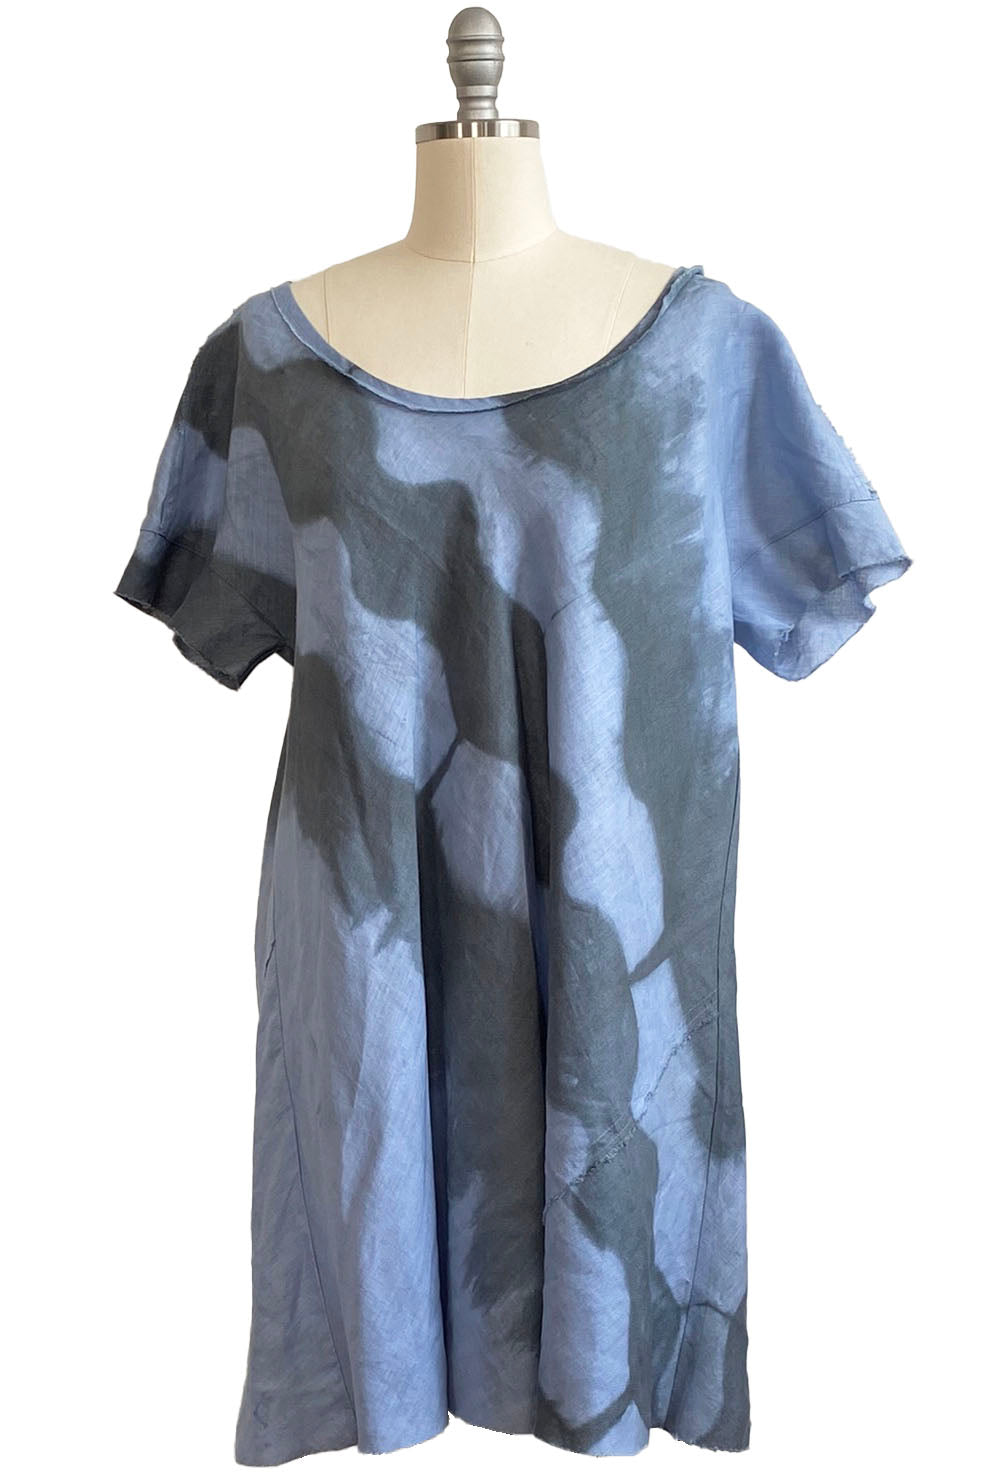 Athena Dress w/ Round Pockets - Light Blue & Grey